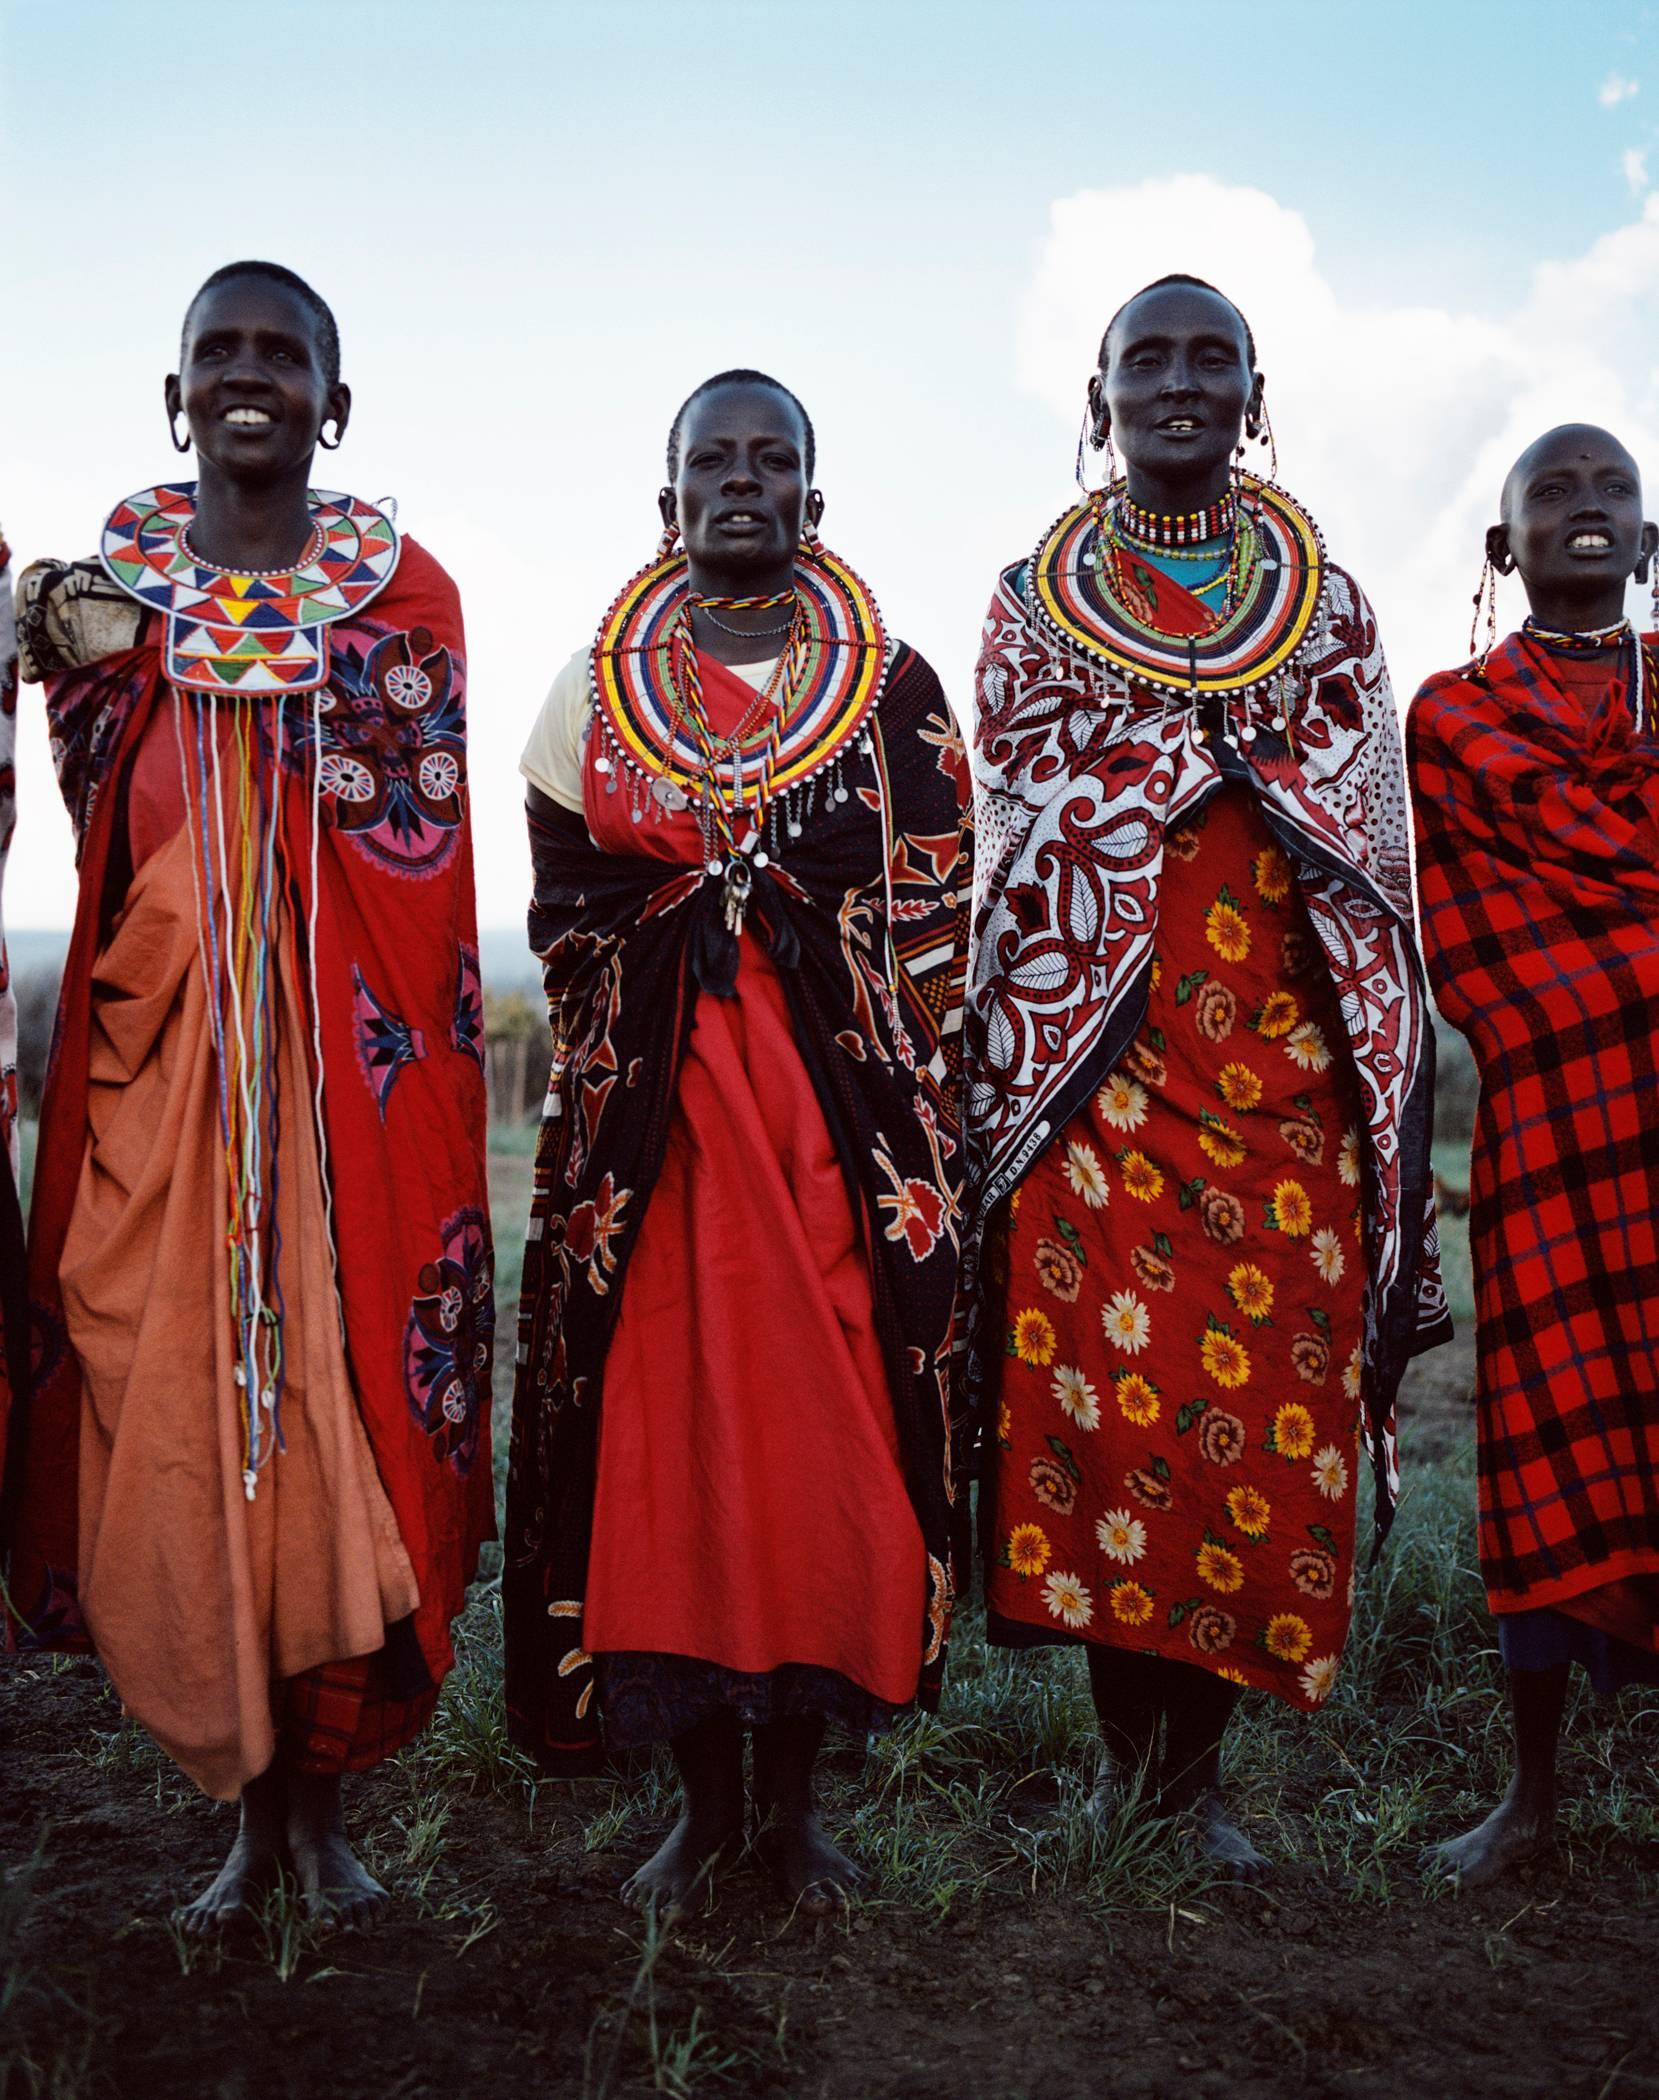 Anne Menke Portrait Photograph - 4 Maasai